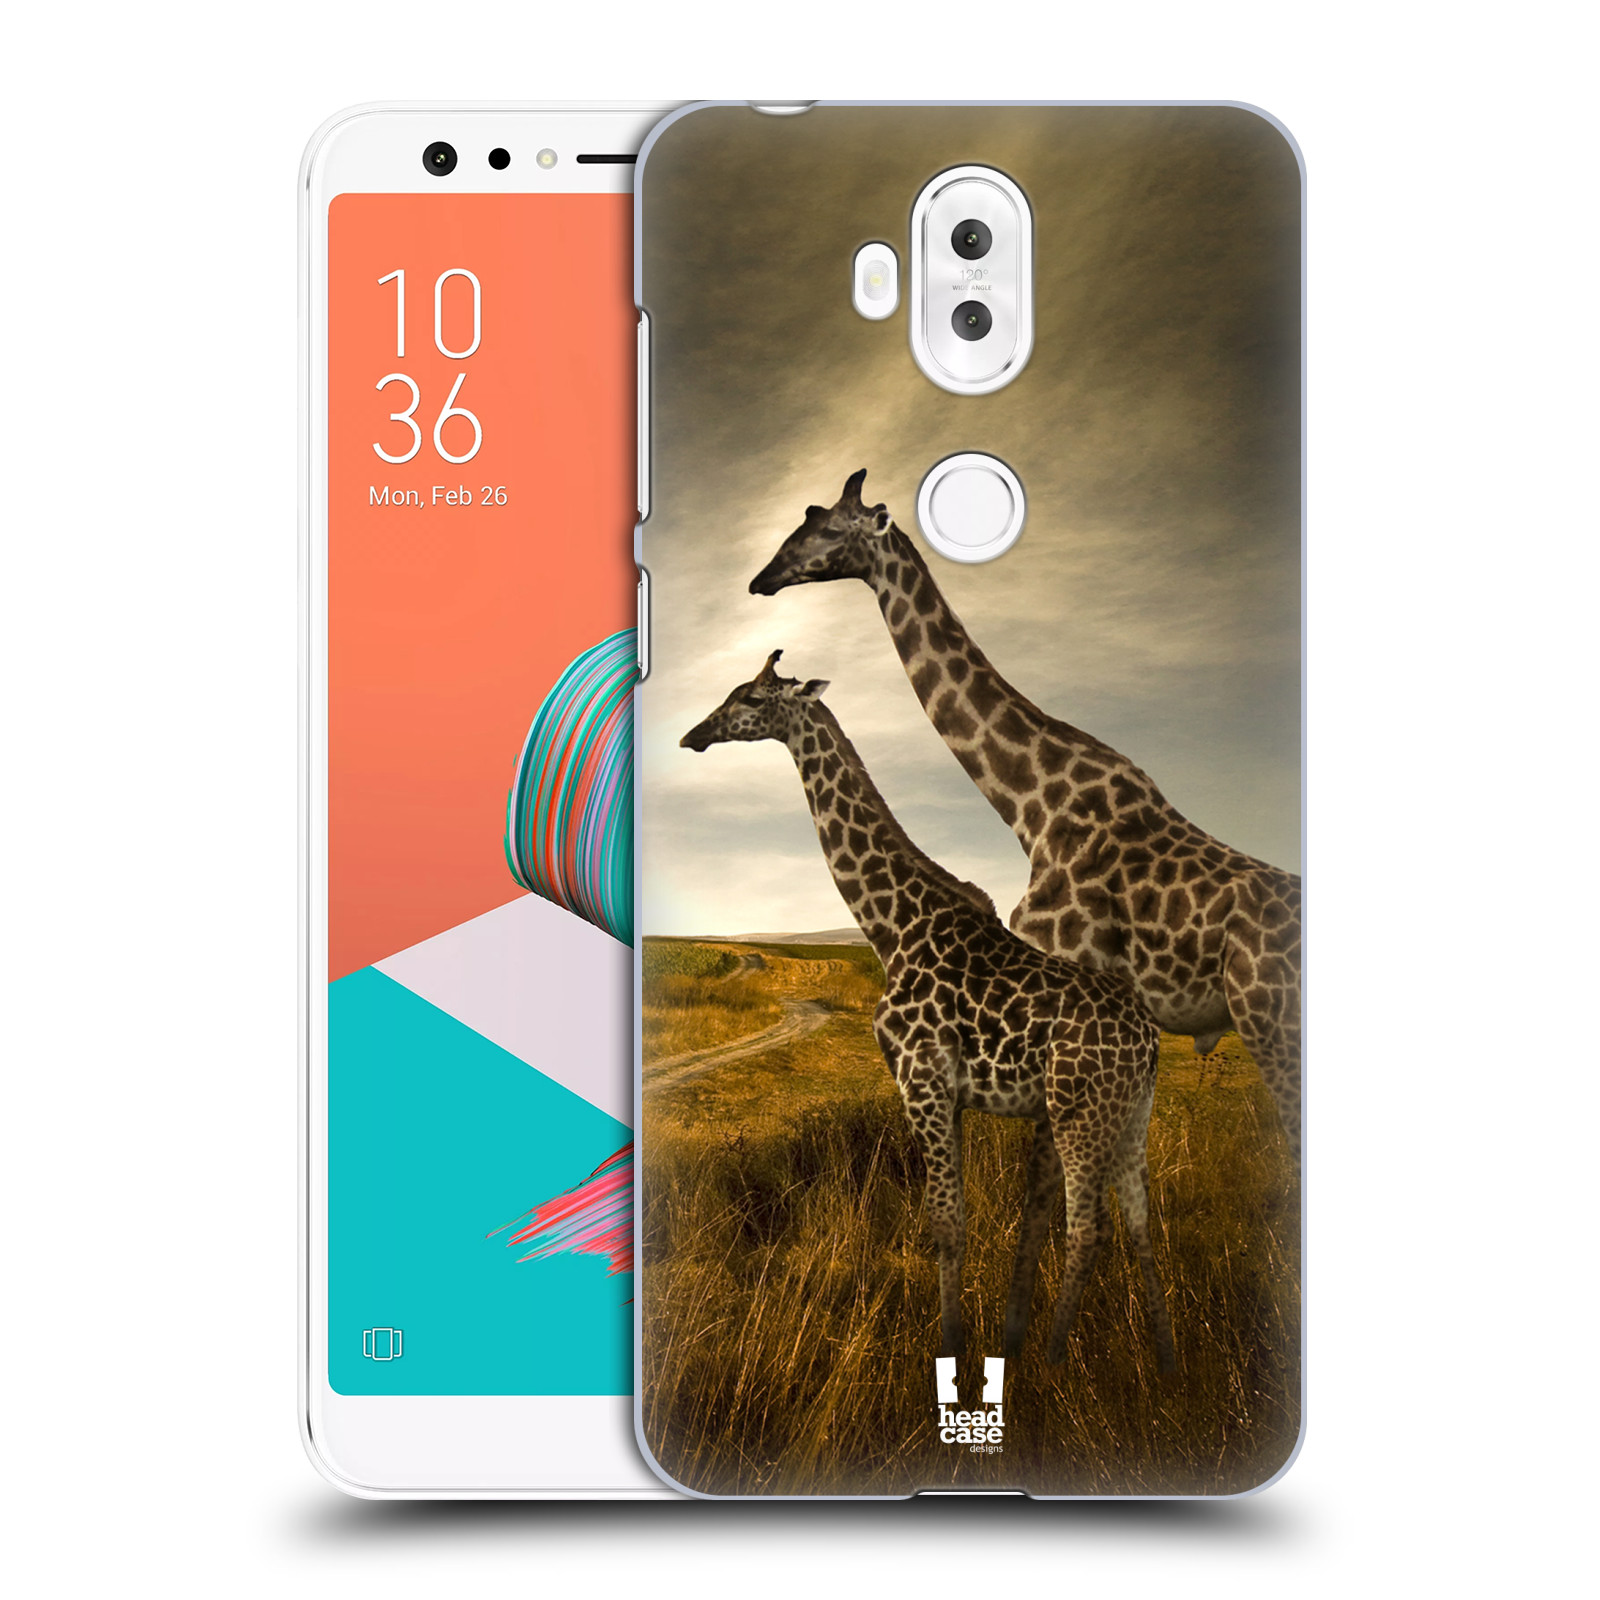 Zadní obal pro mobil Asus Zenfone 5 Lite ZC600KL - HEAD CASE - Svět zvířat žirafy